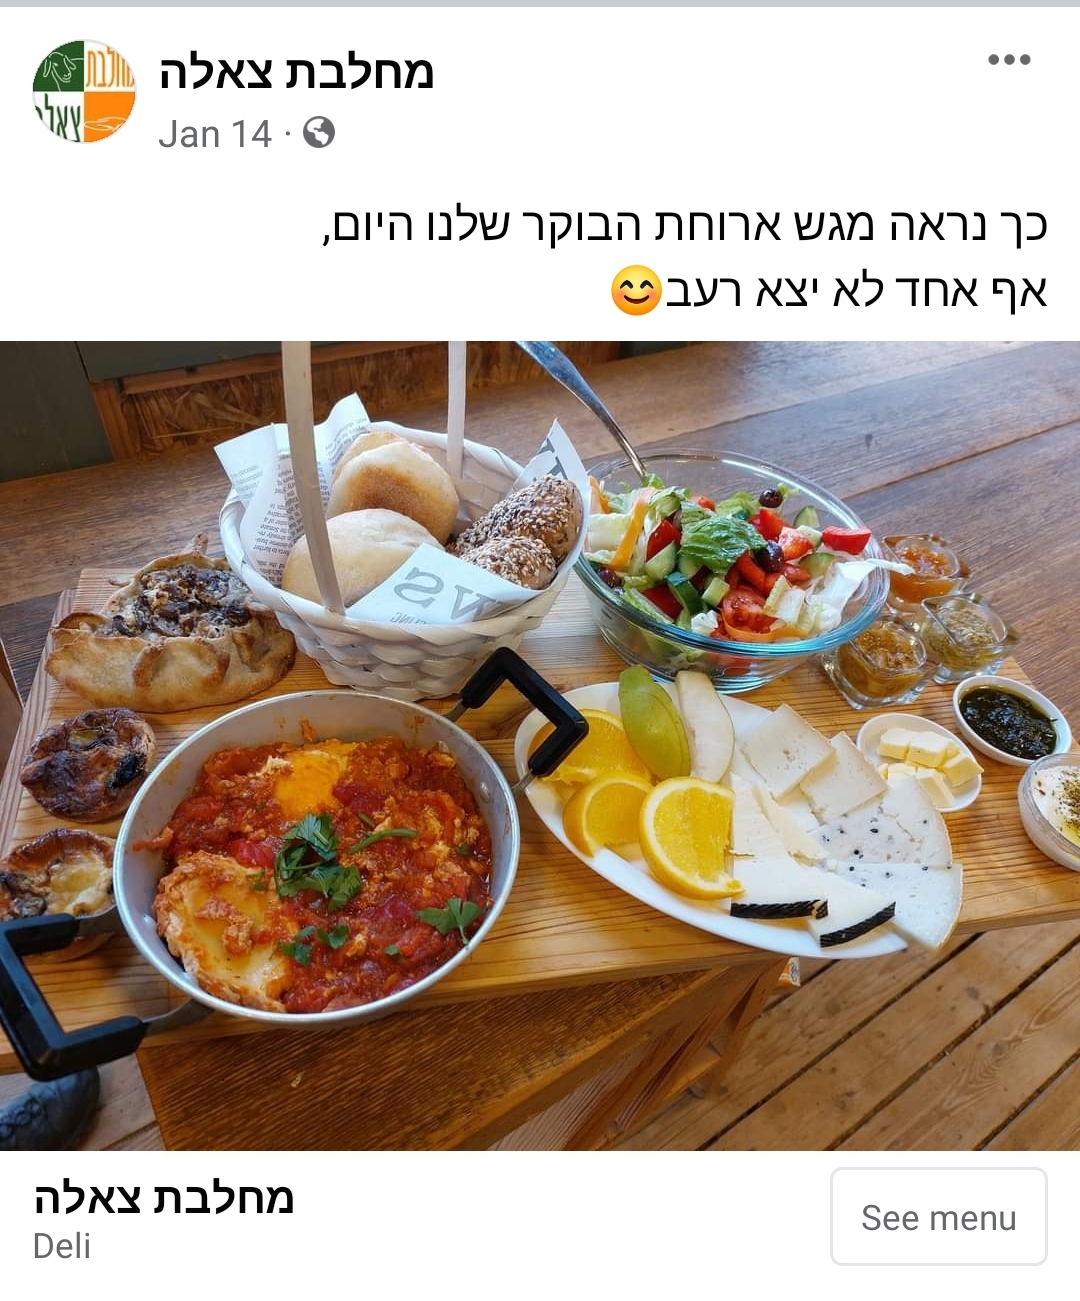 פוסט מתוך עמוד פייסבוק: מגש ארוחת בוקר, שקשוקה, לחמים, פלטת גבינות וסלט